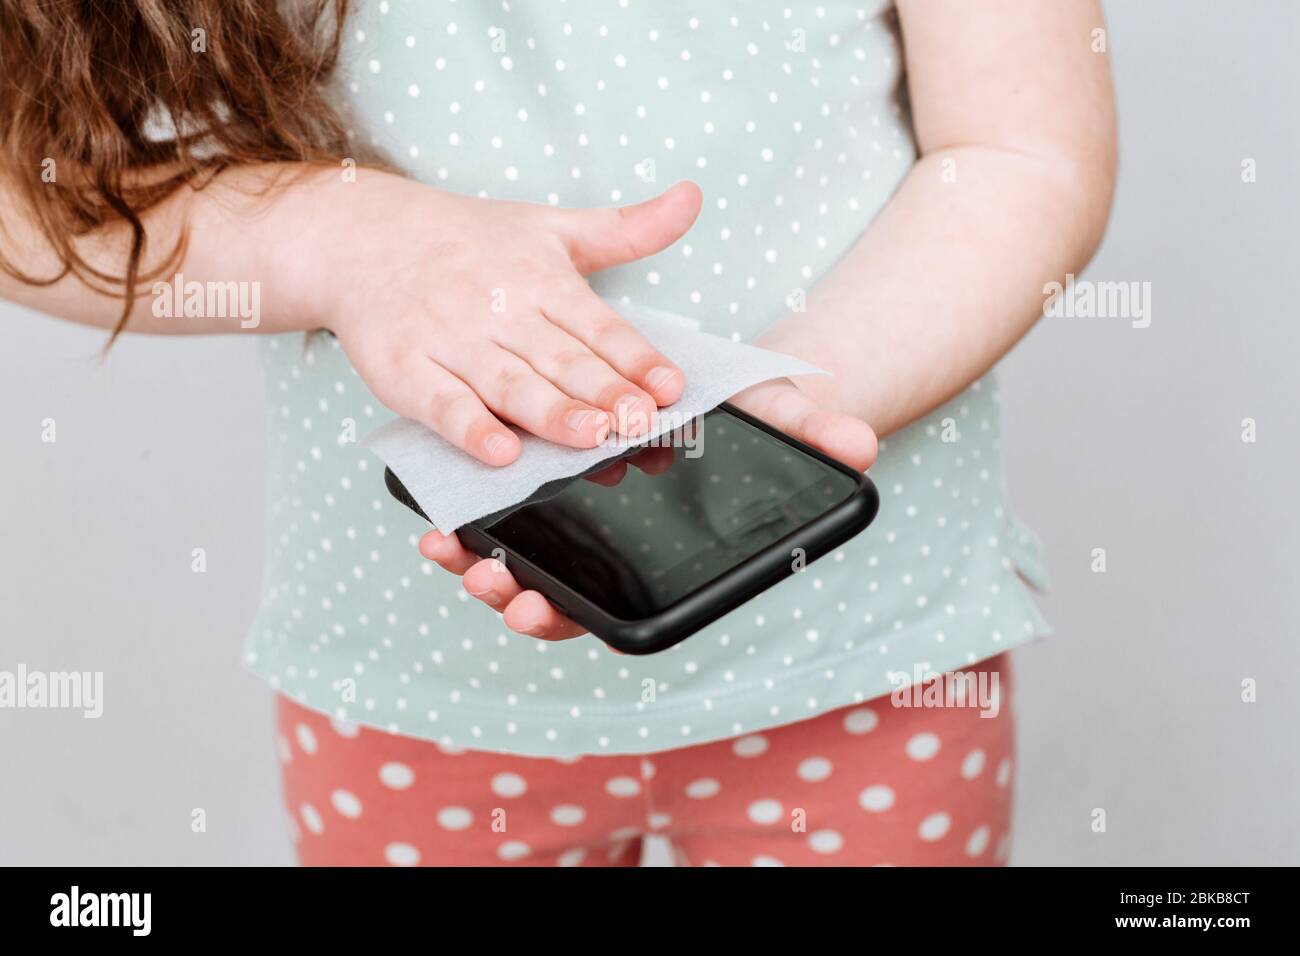 L'enfant désinfecte l'écran du téléphone. Il est nettoyé en enlevant les microbes avec des lingettes humides antibactériennes pour éviter le coronavirus Banque D'Images